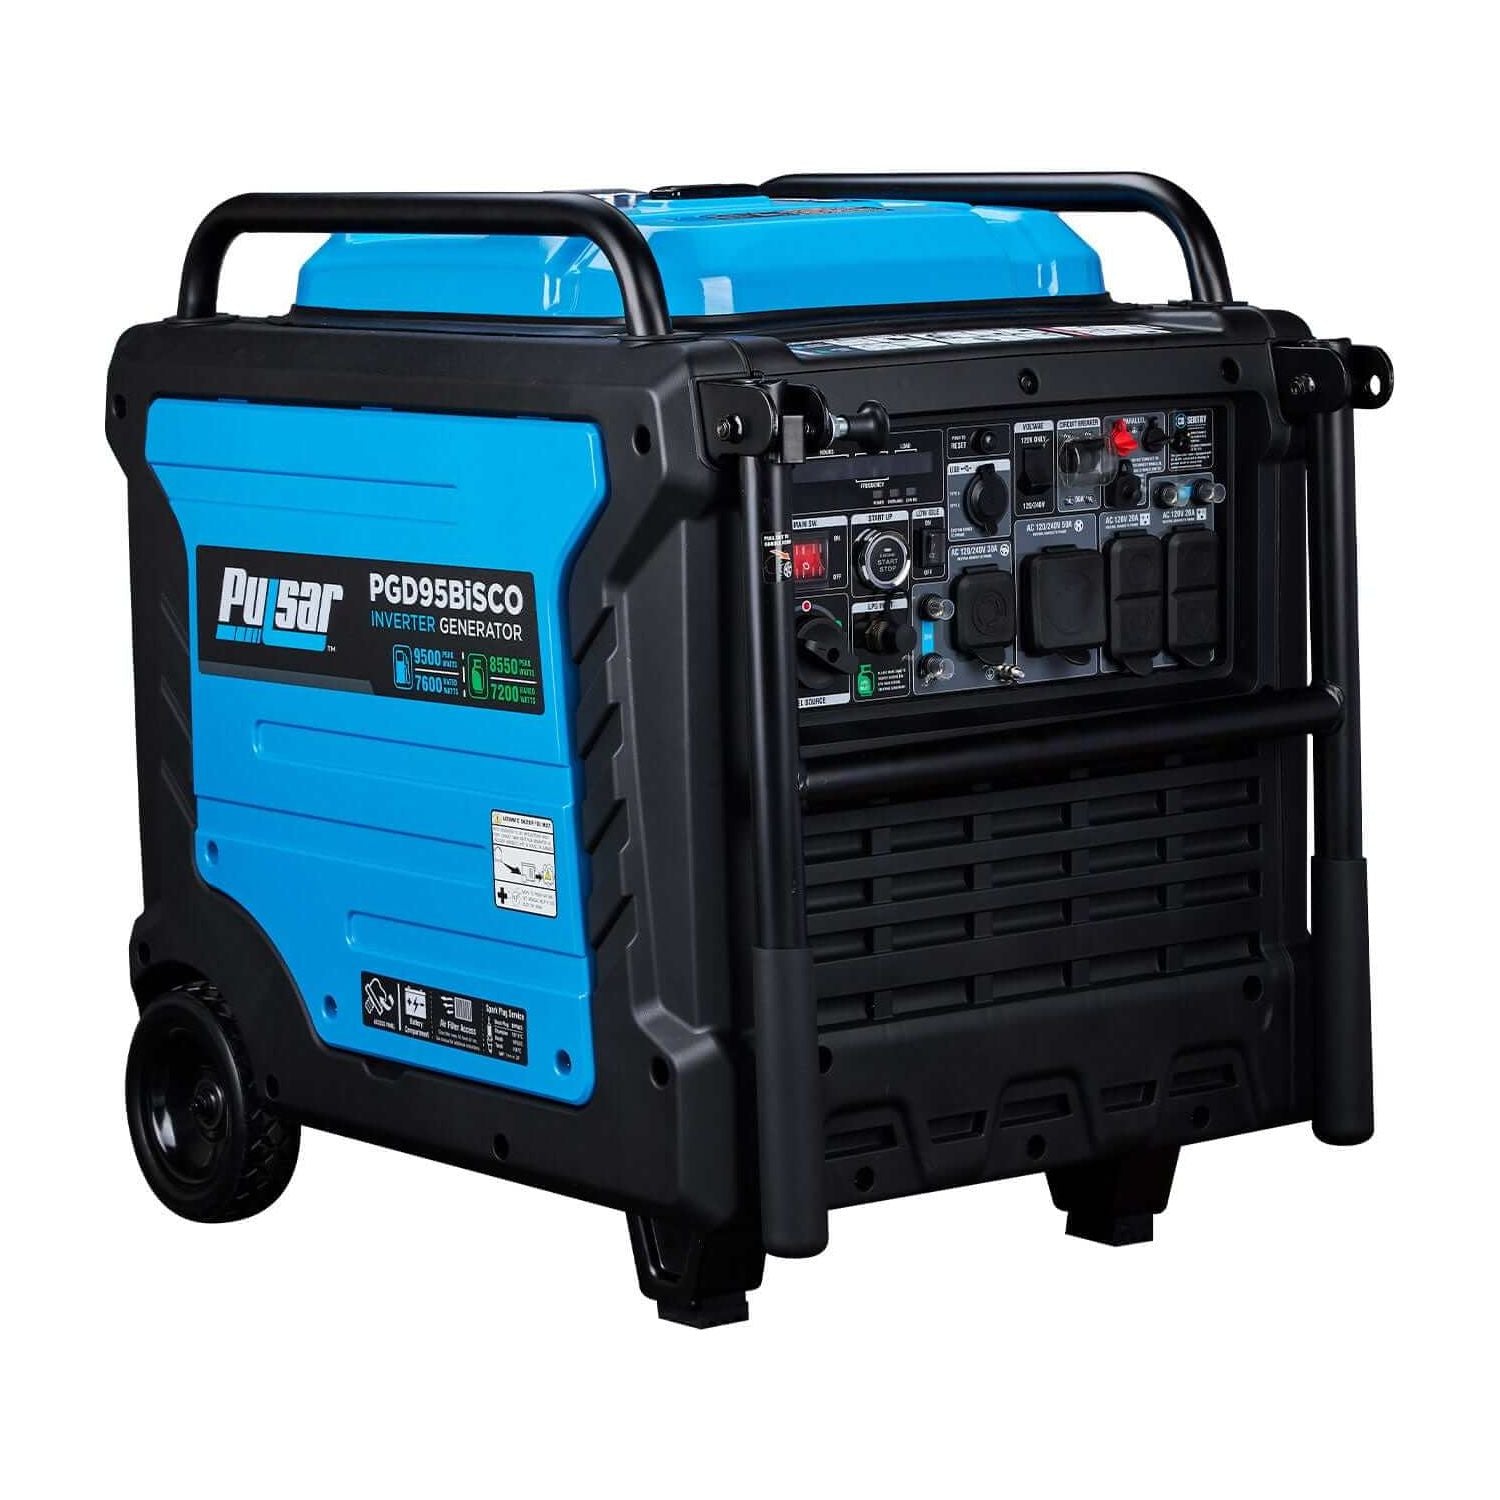 Pulsar Inverter Generator Pulsar PGD95BiSCO 9,500-Watt Super Quiet Dual Fuel Portable Inverter Generator – CARB Compliant